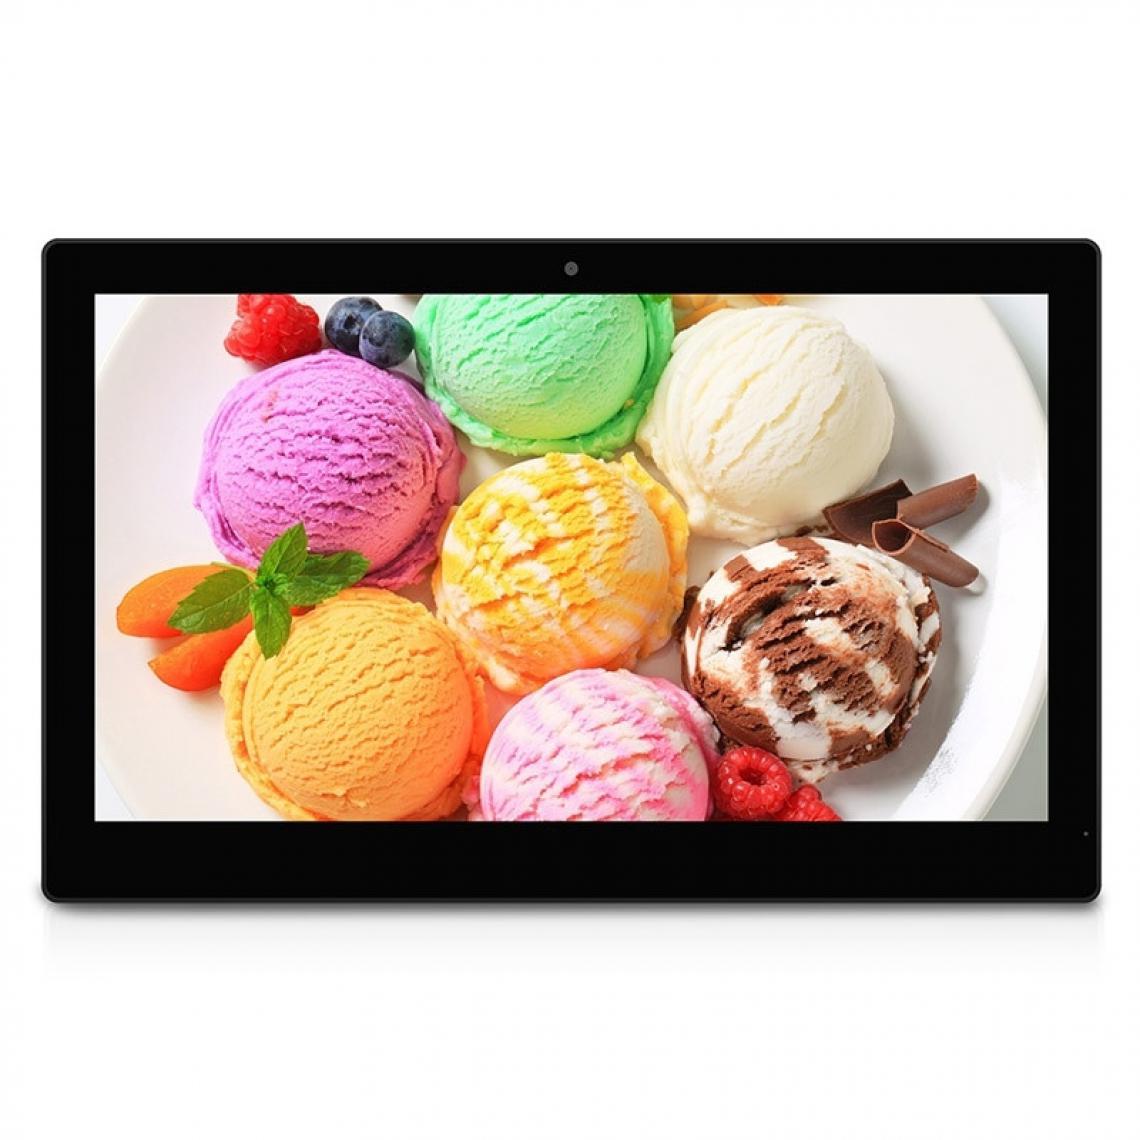 Wewoo - Tablette Grand Ecran Tactile 15,6 pouces Android 7.1 PC tout en un avec support 2 Go + 16 Go Full HD 1080p RK3399 Dual Core A72 + Quad A53 2,0 GHz Bluetooth WiFi Carte SD USB OTG Noir - Tablette Android